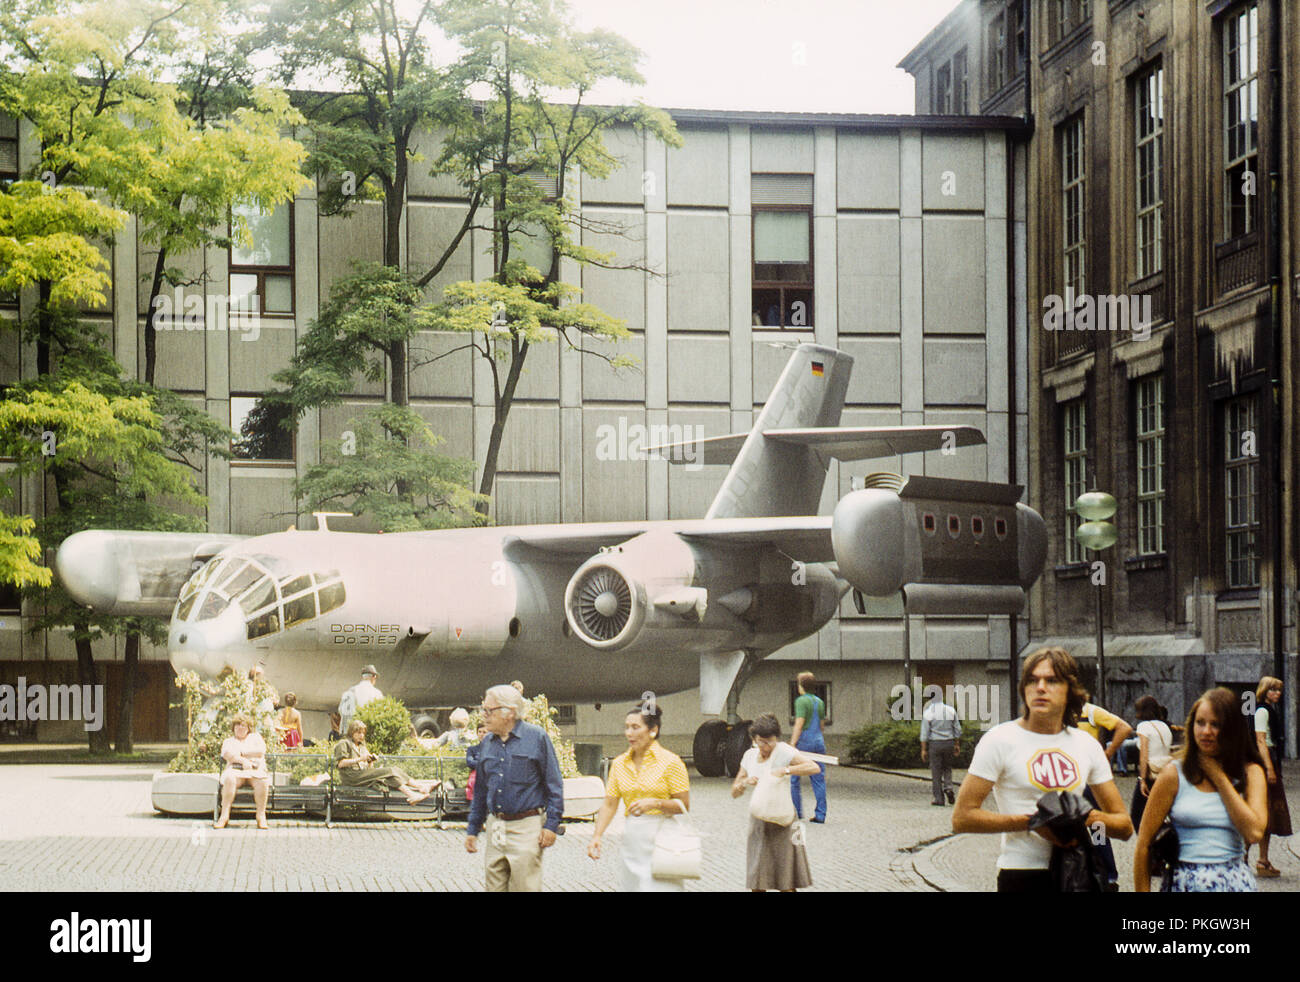 El patio del Deutsches Museum, Munich, Alemania, en 1979. El avión que puede verse es el Dornier DO 31 E3. Foto de stock